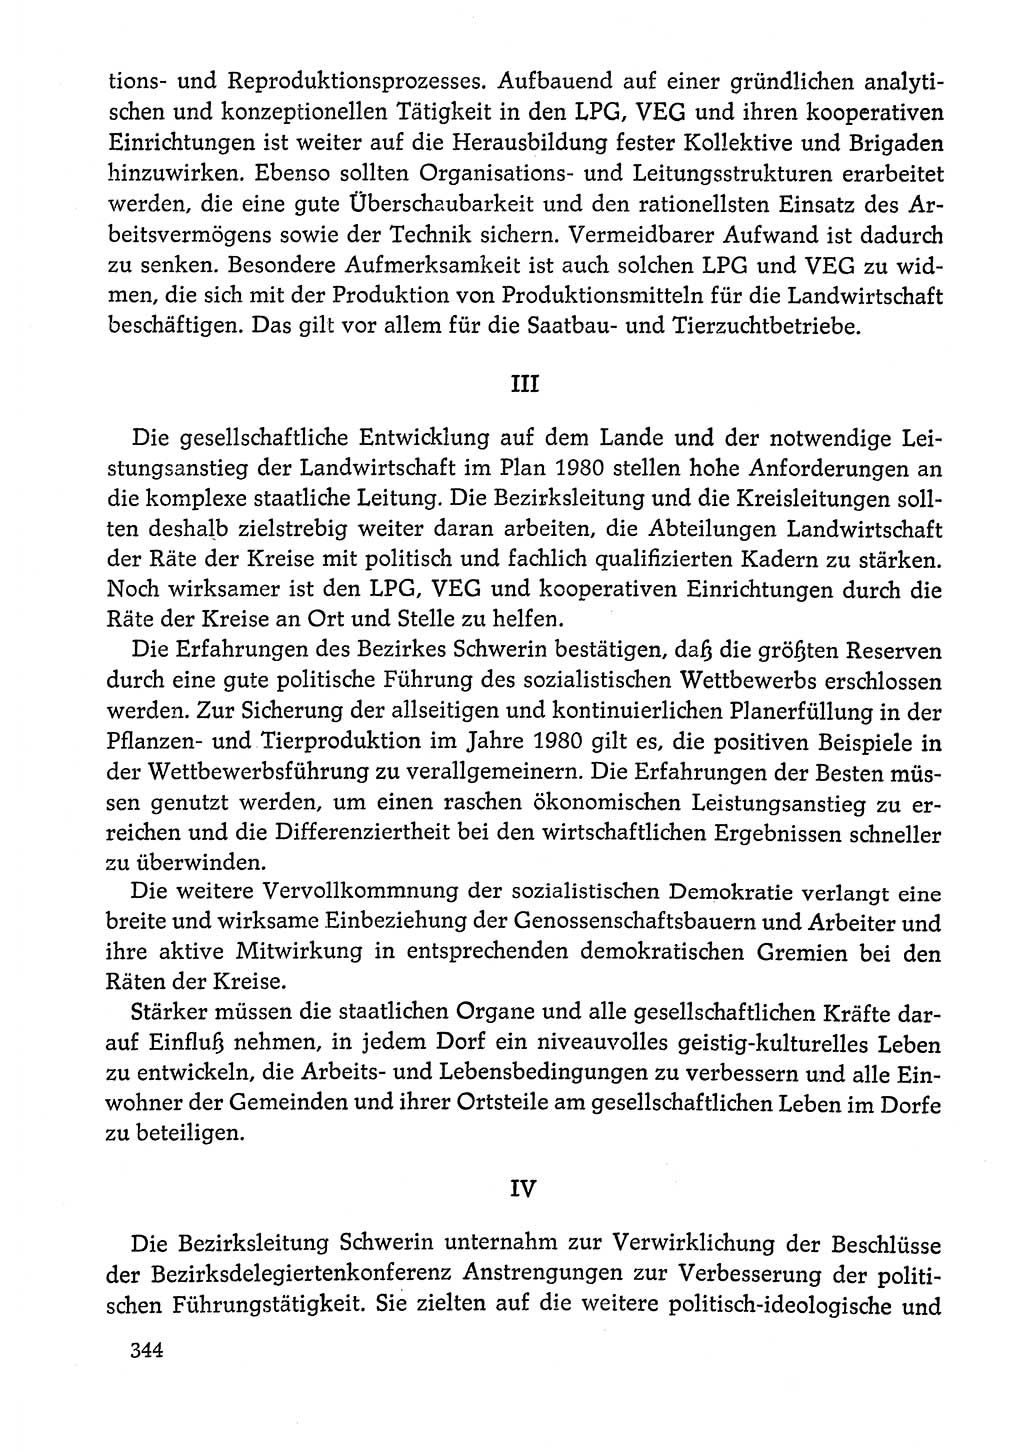 Dokumente der Sozialistischen Einheitspartei Deutschlands (SED) [Deutsche Demokratische Republik (DDR)] 1978-1979, Seite 344 (Dok. SED DDR 1978-1979, S. 344)